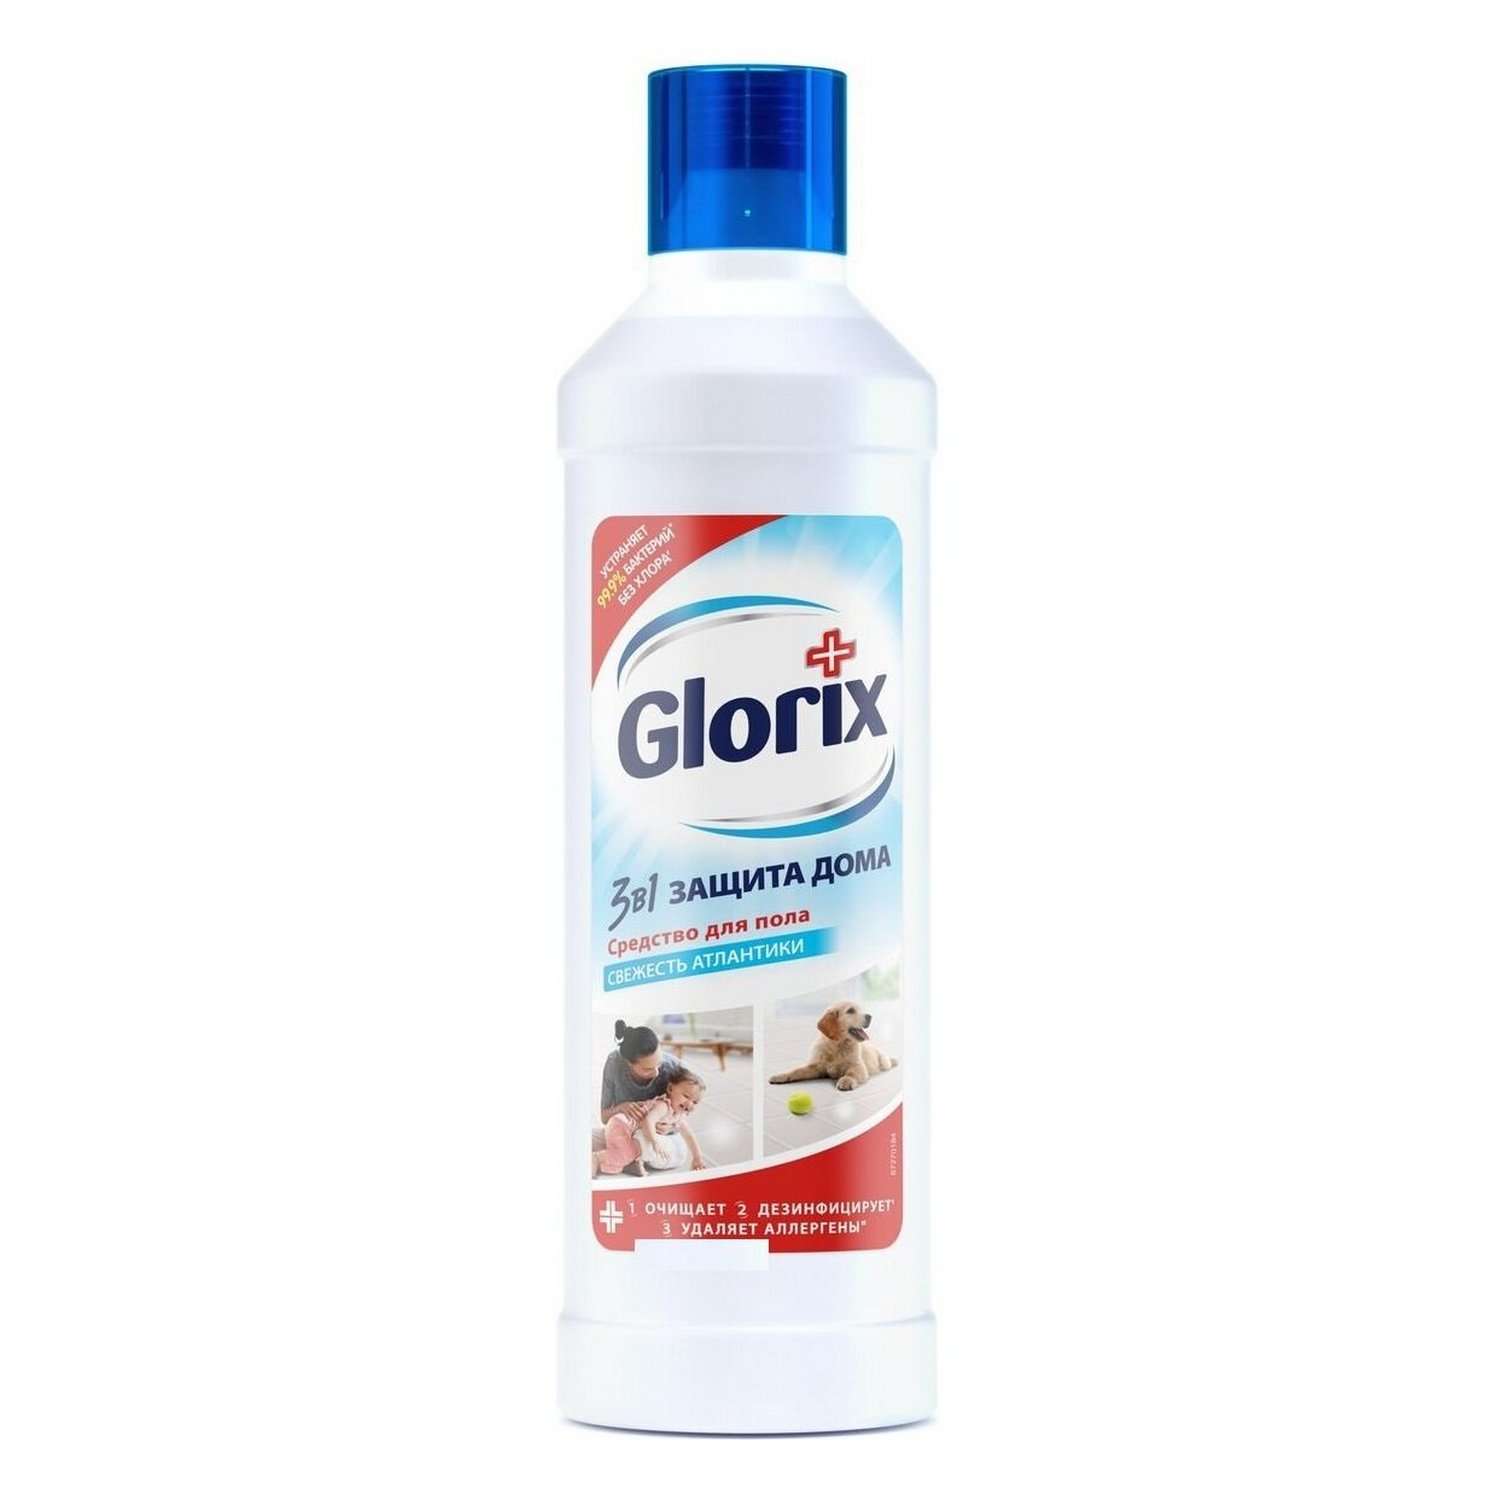 Средство для мытья пола Glorix свежесть Атлантики 1л - фото 1